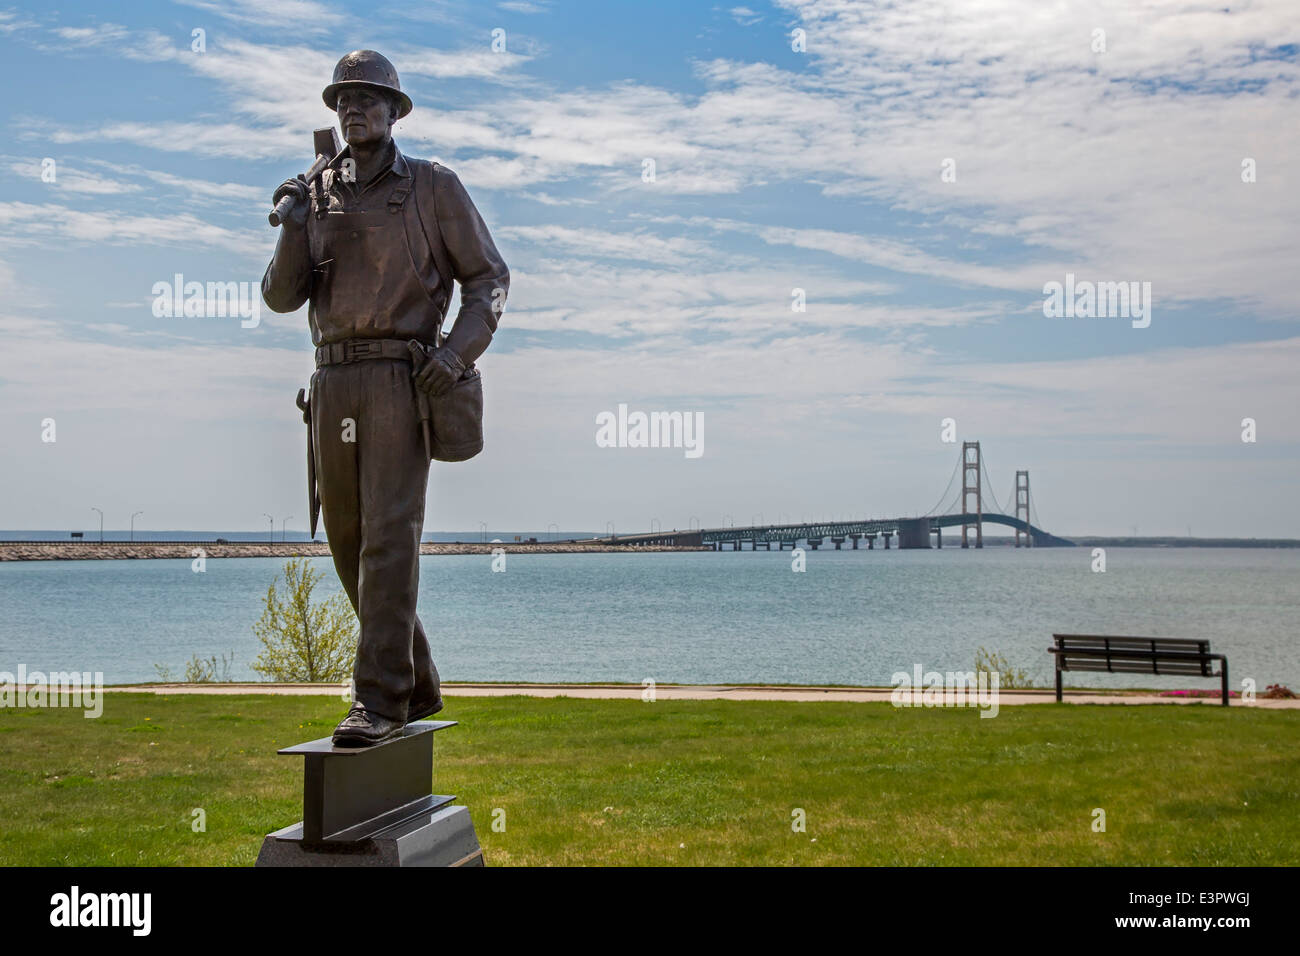 San Ignace, Michigan - Una statua di un ironworker è un monumento per i cinque operai uccisi nel costruire il ponte Mackinac. Foto Stock